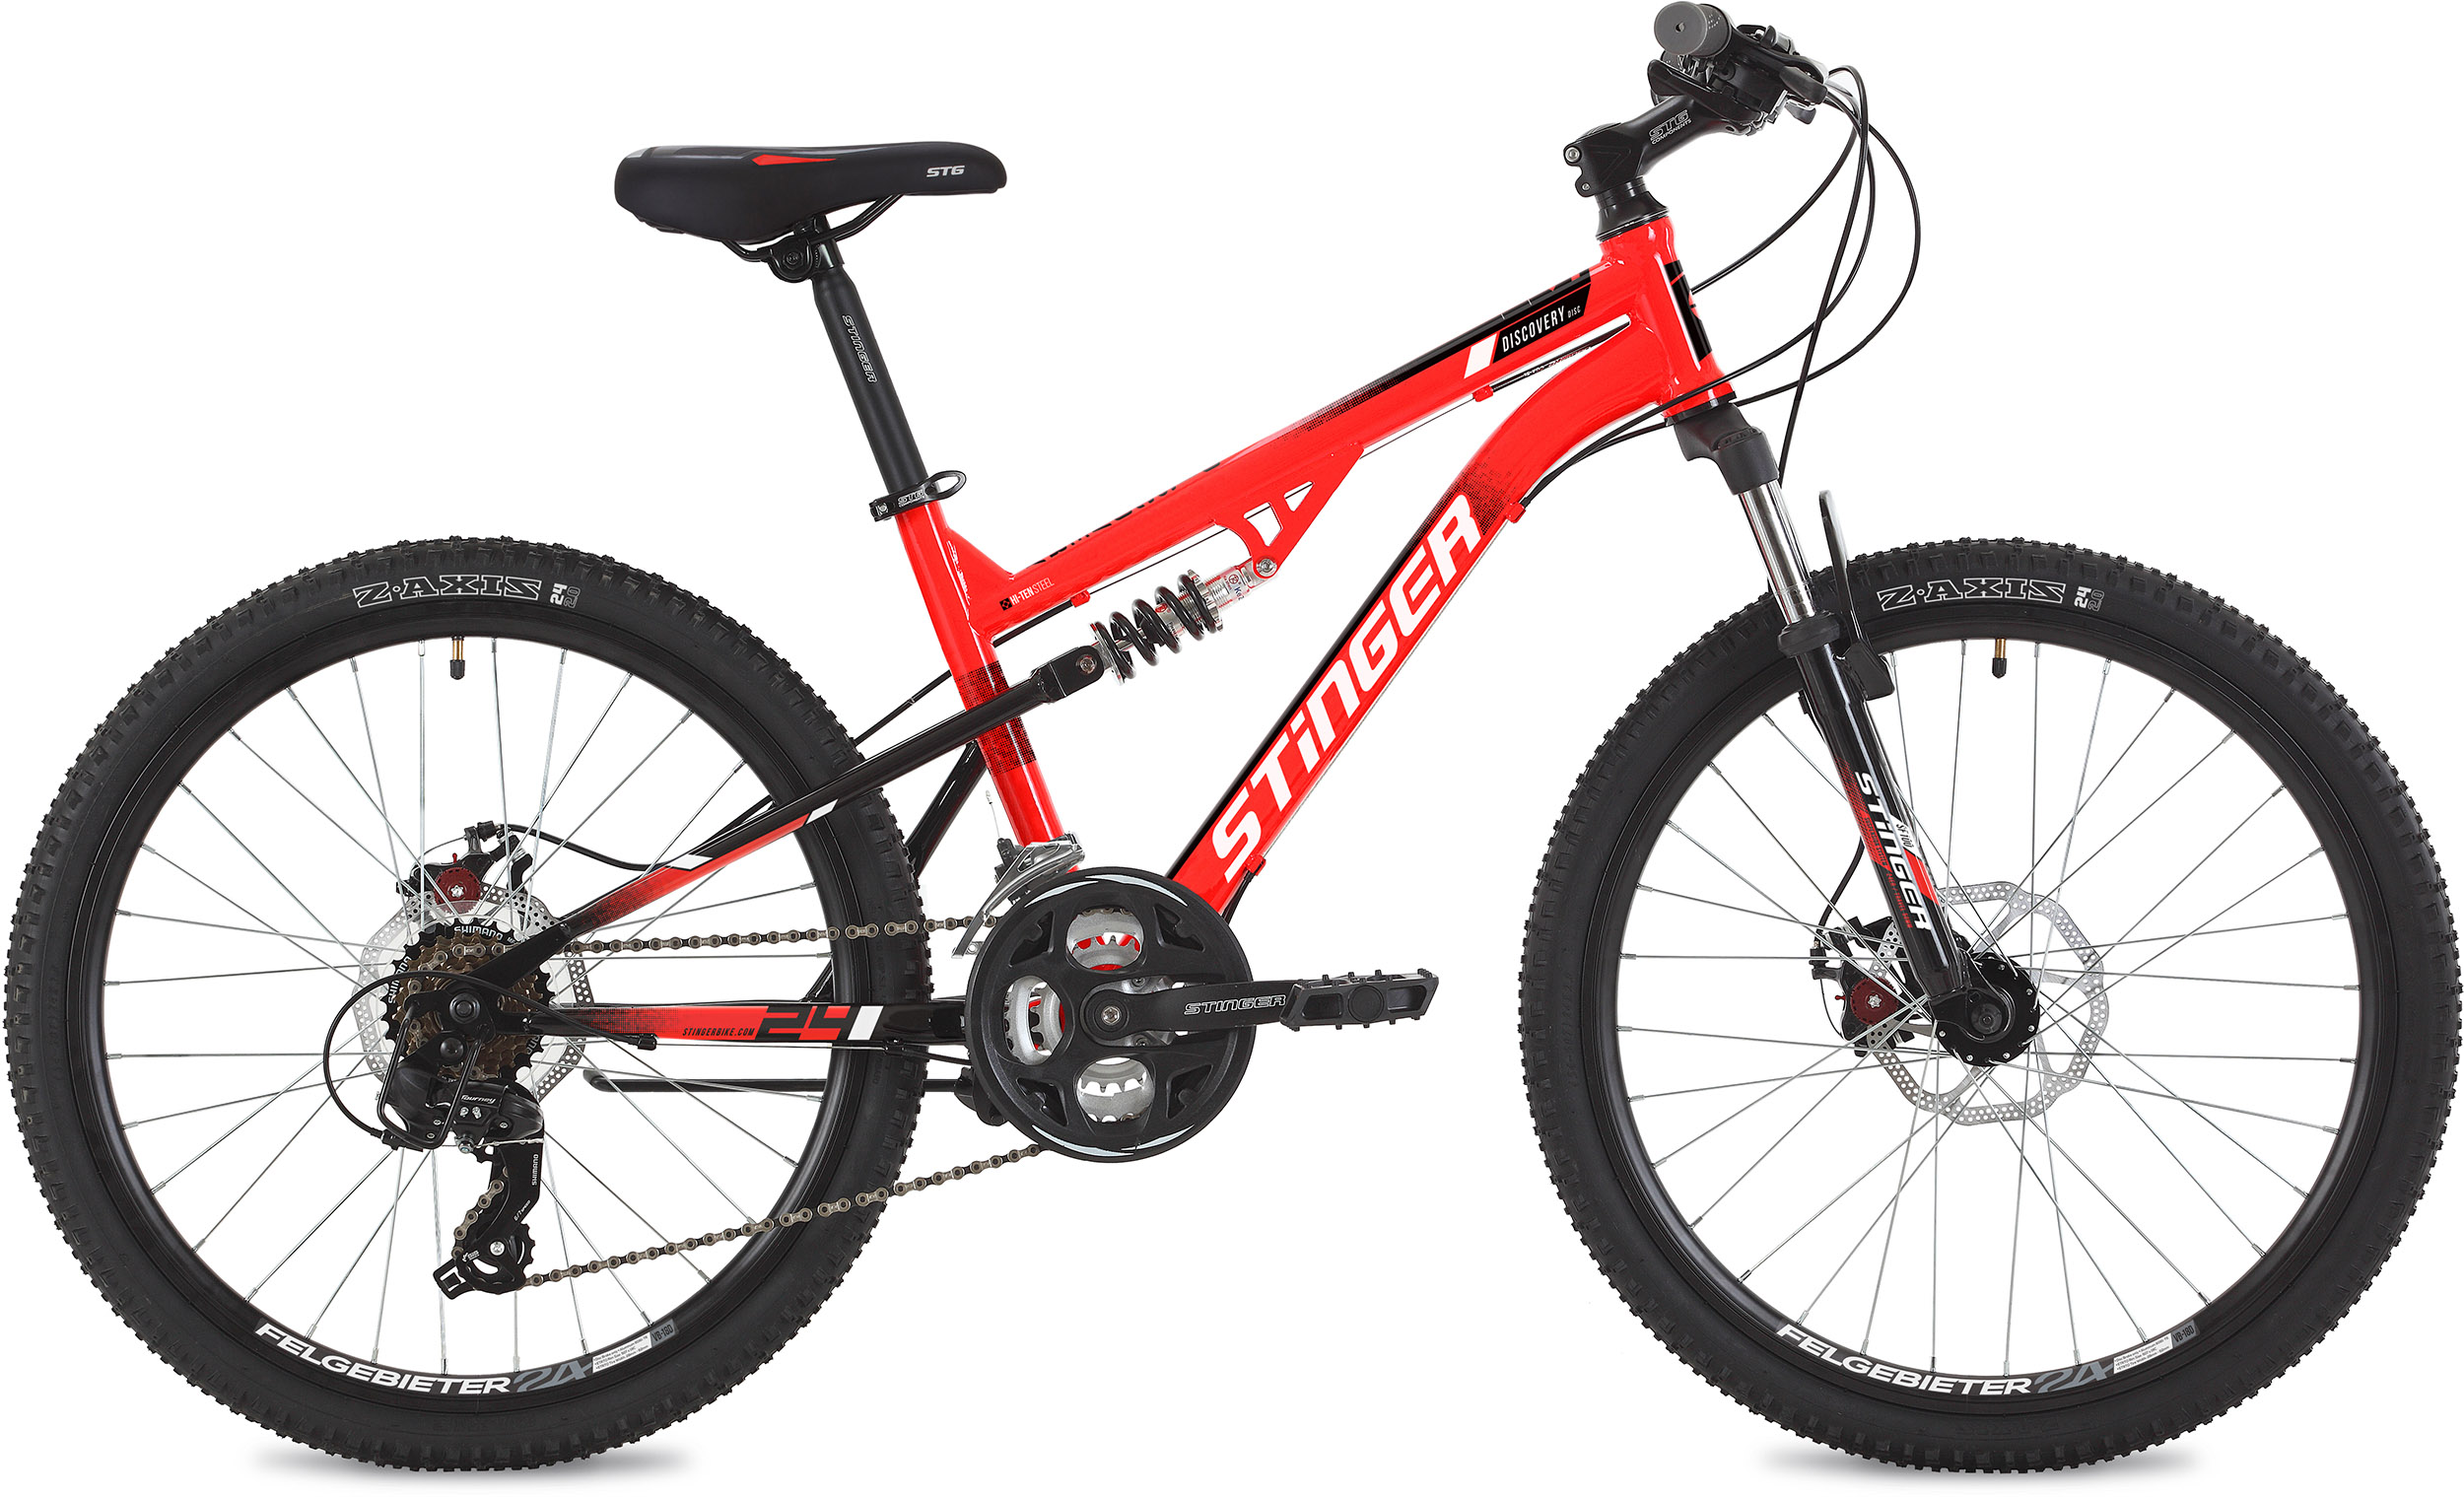  Отзывы о Подростковом велосипеде Stinger Discovery D 24 2020